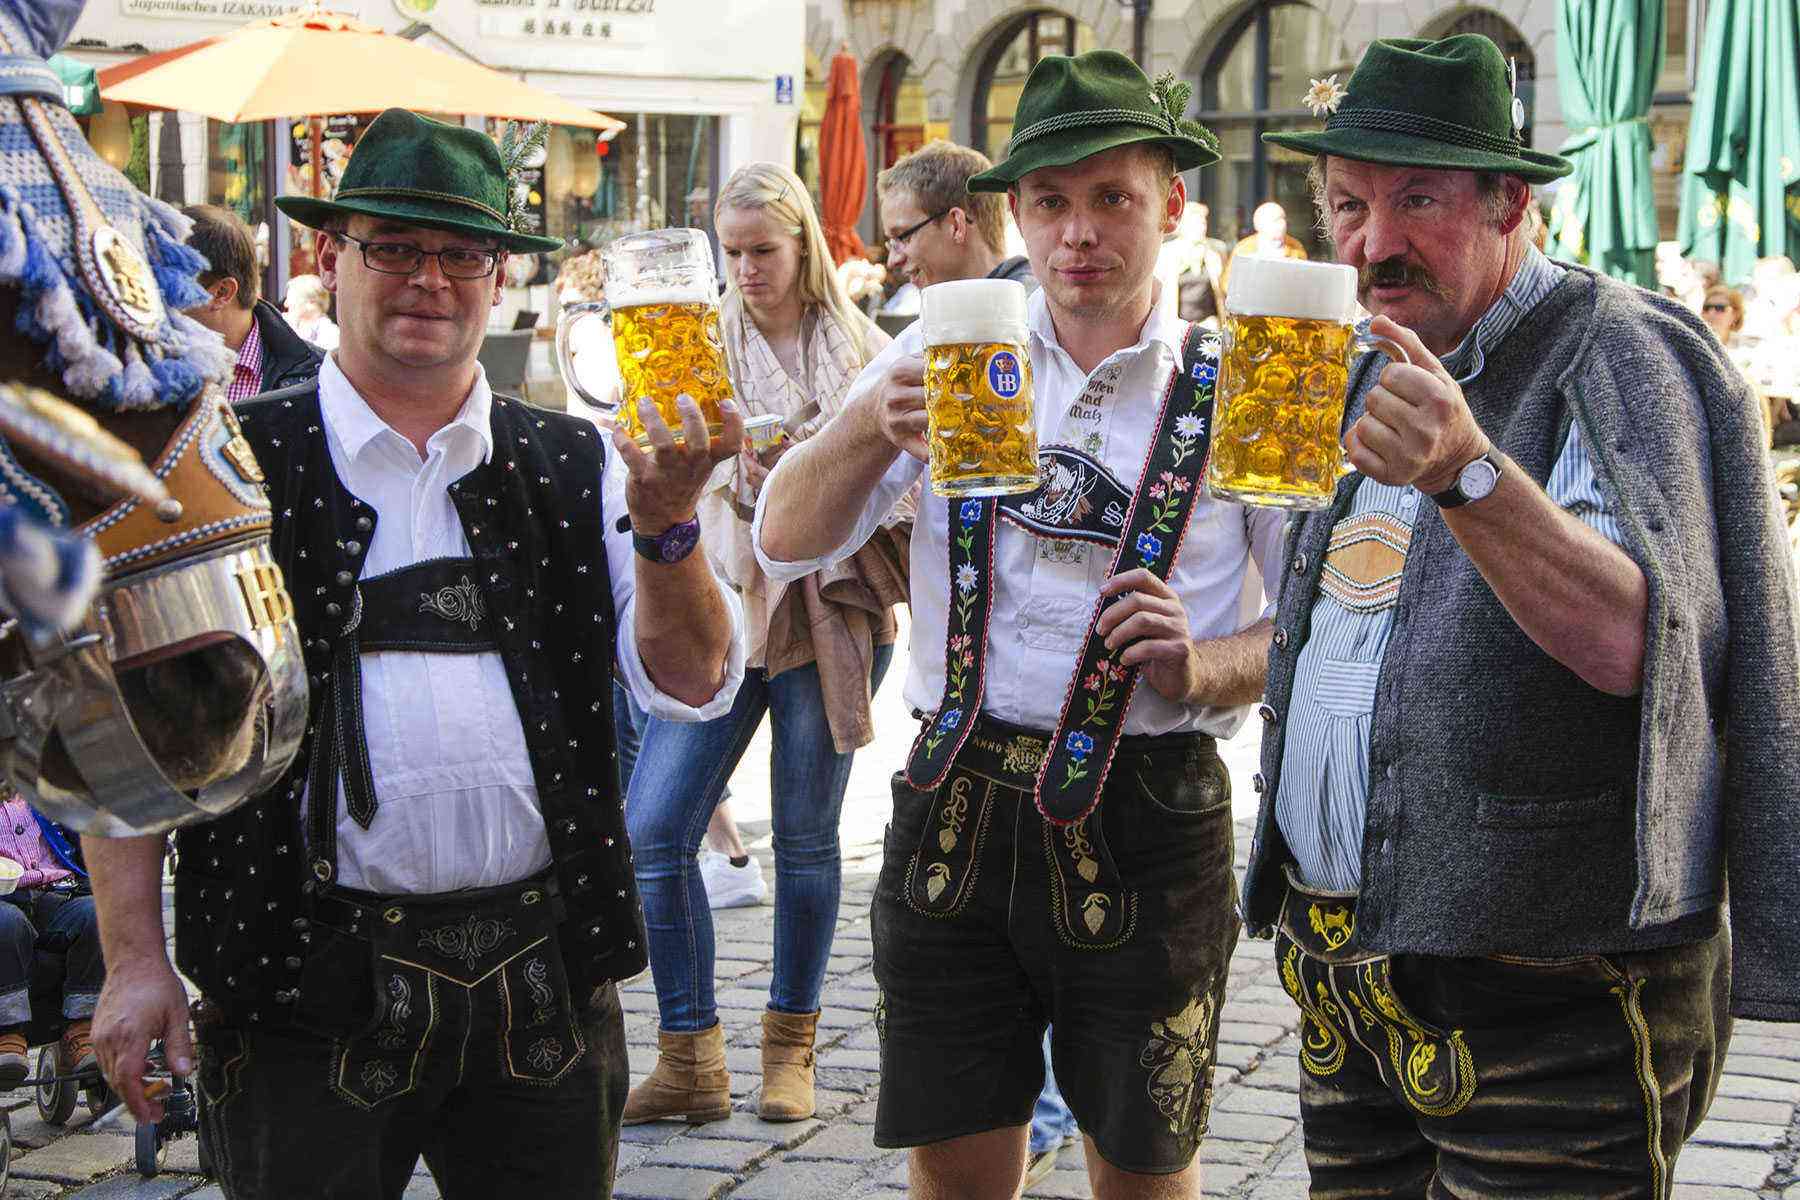 Traditional Bavarian Guy German Rutger Lederhosen Beer Oktoberfest